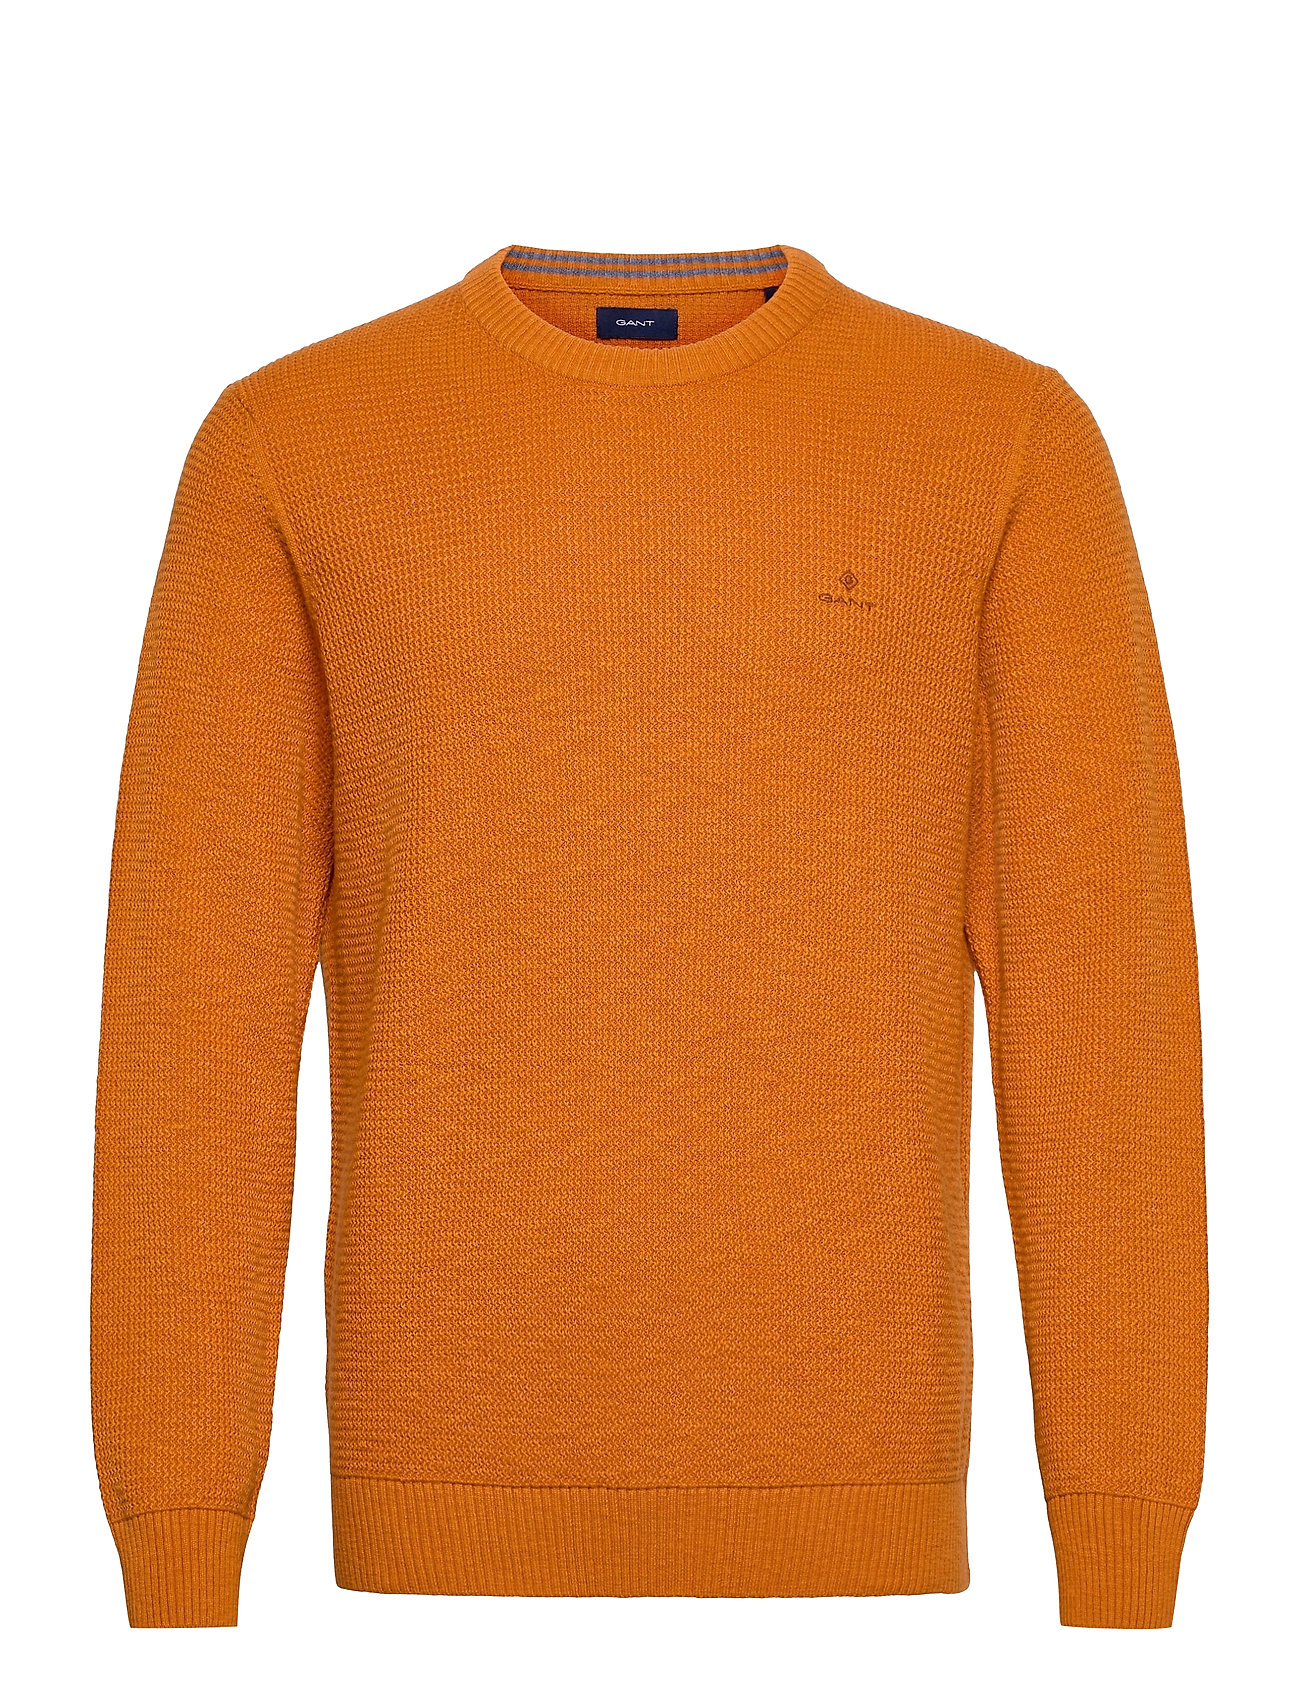 GANT sweatere & strik med hals – D2. C-Neck Strikket Trøje Med Rund Hals Orange GANT til herre i Blå Pashion.dk